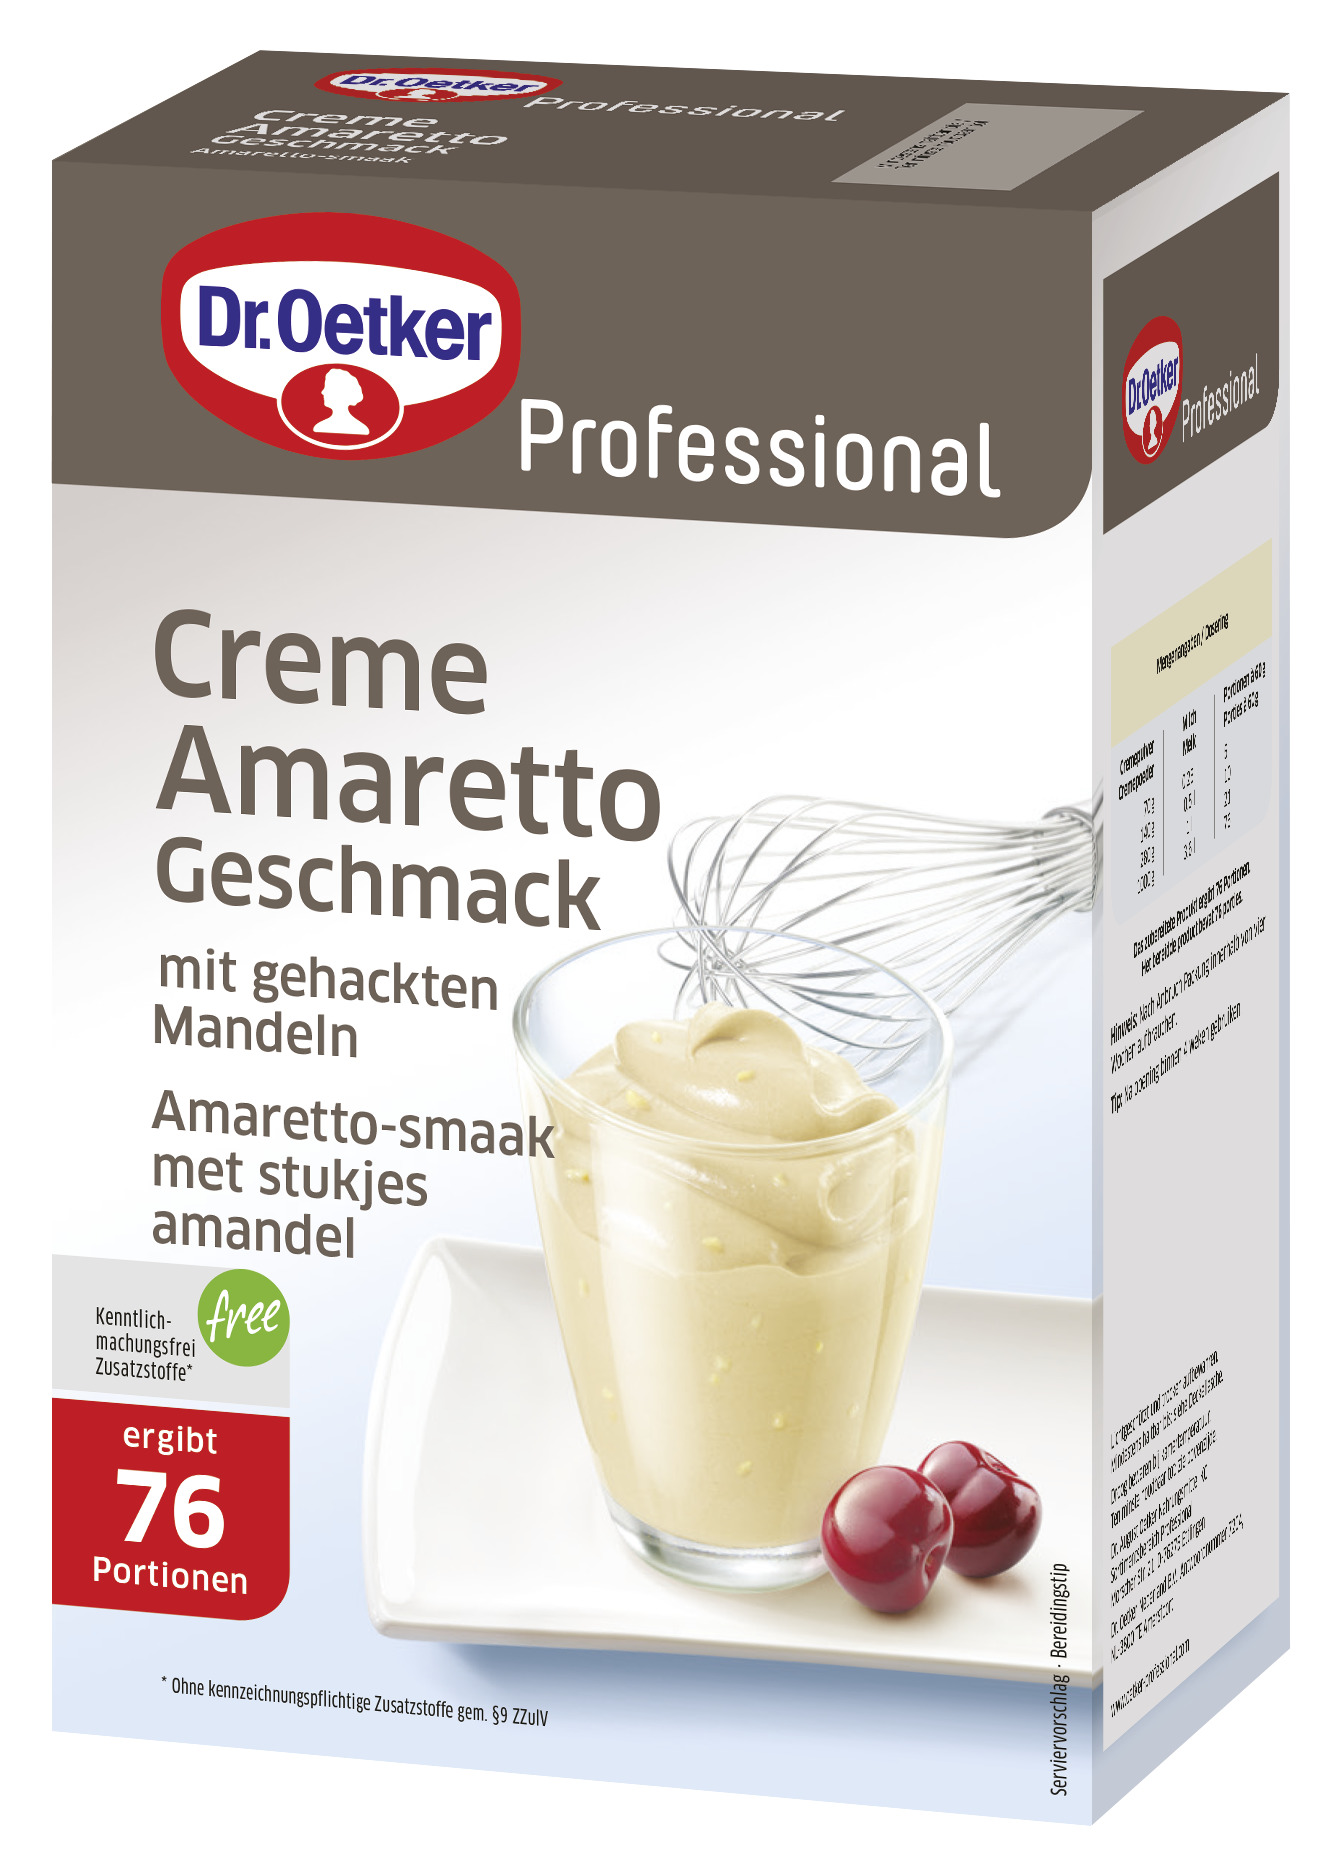 Creme Amaretto Geschmack 1000g